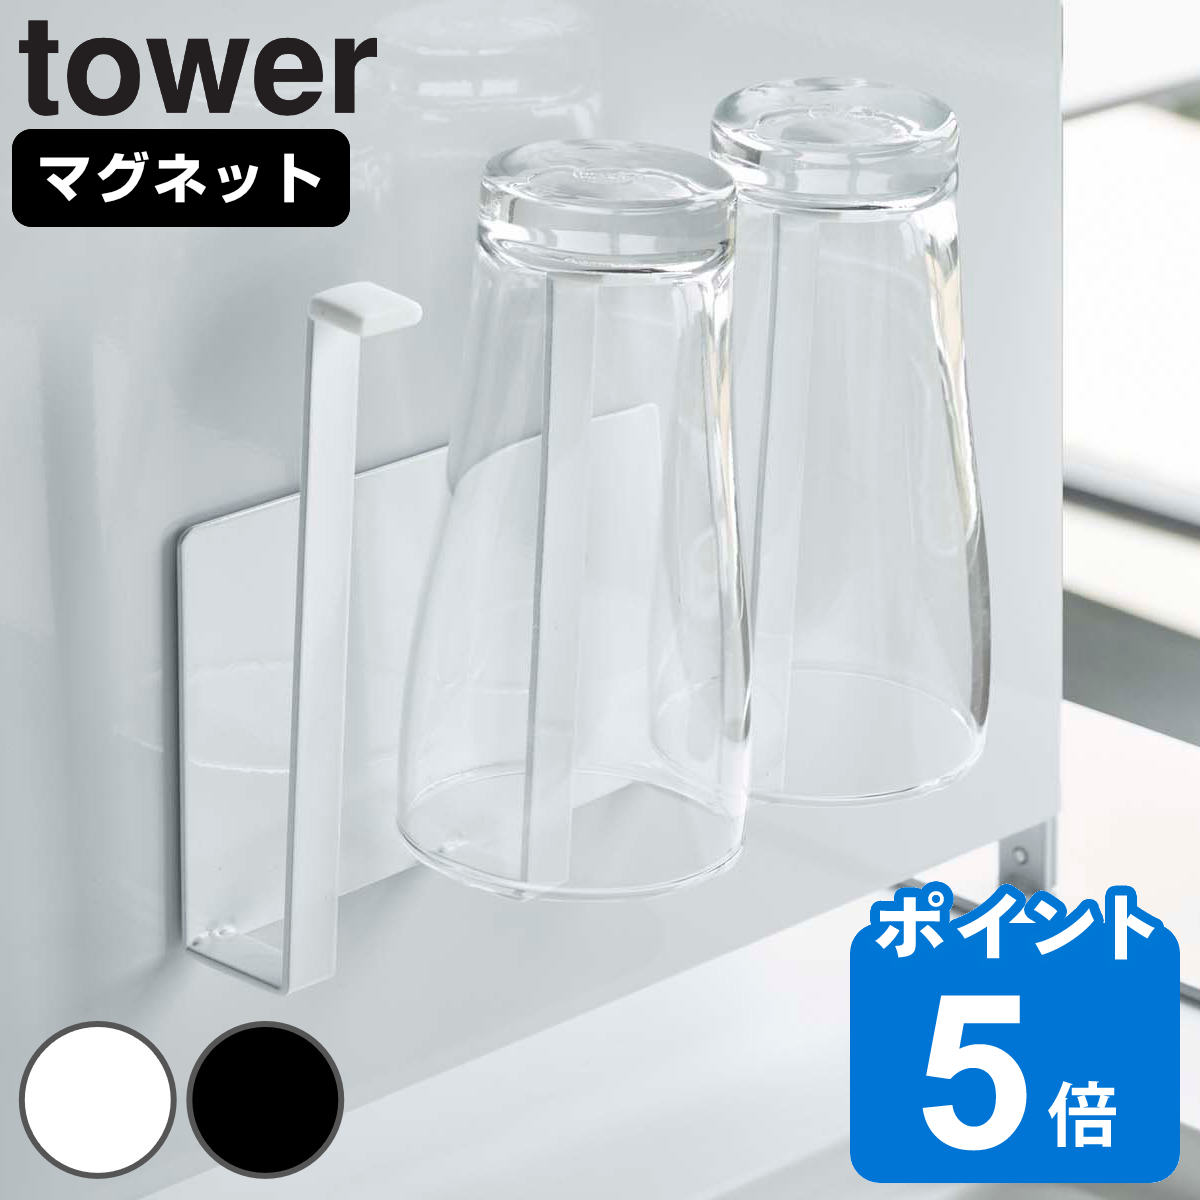 山崎実業 tower マグネットグラス＆ボトルホルダー タワー 対応パーツ